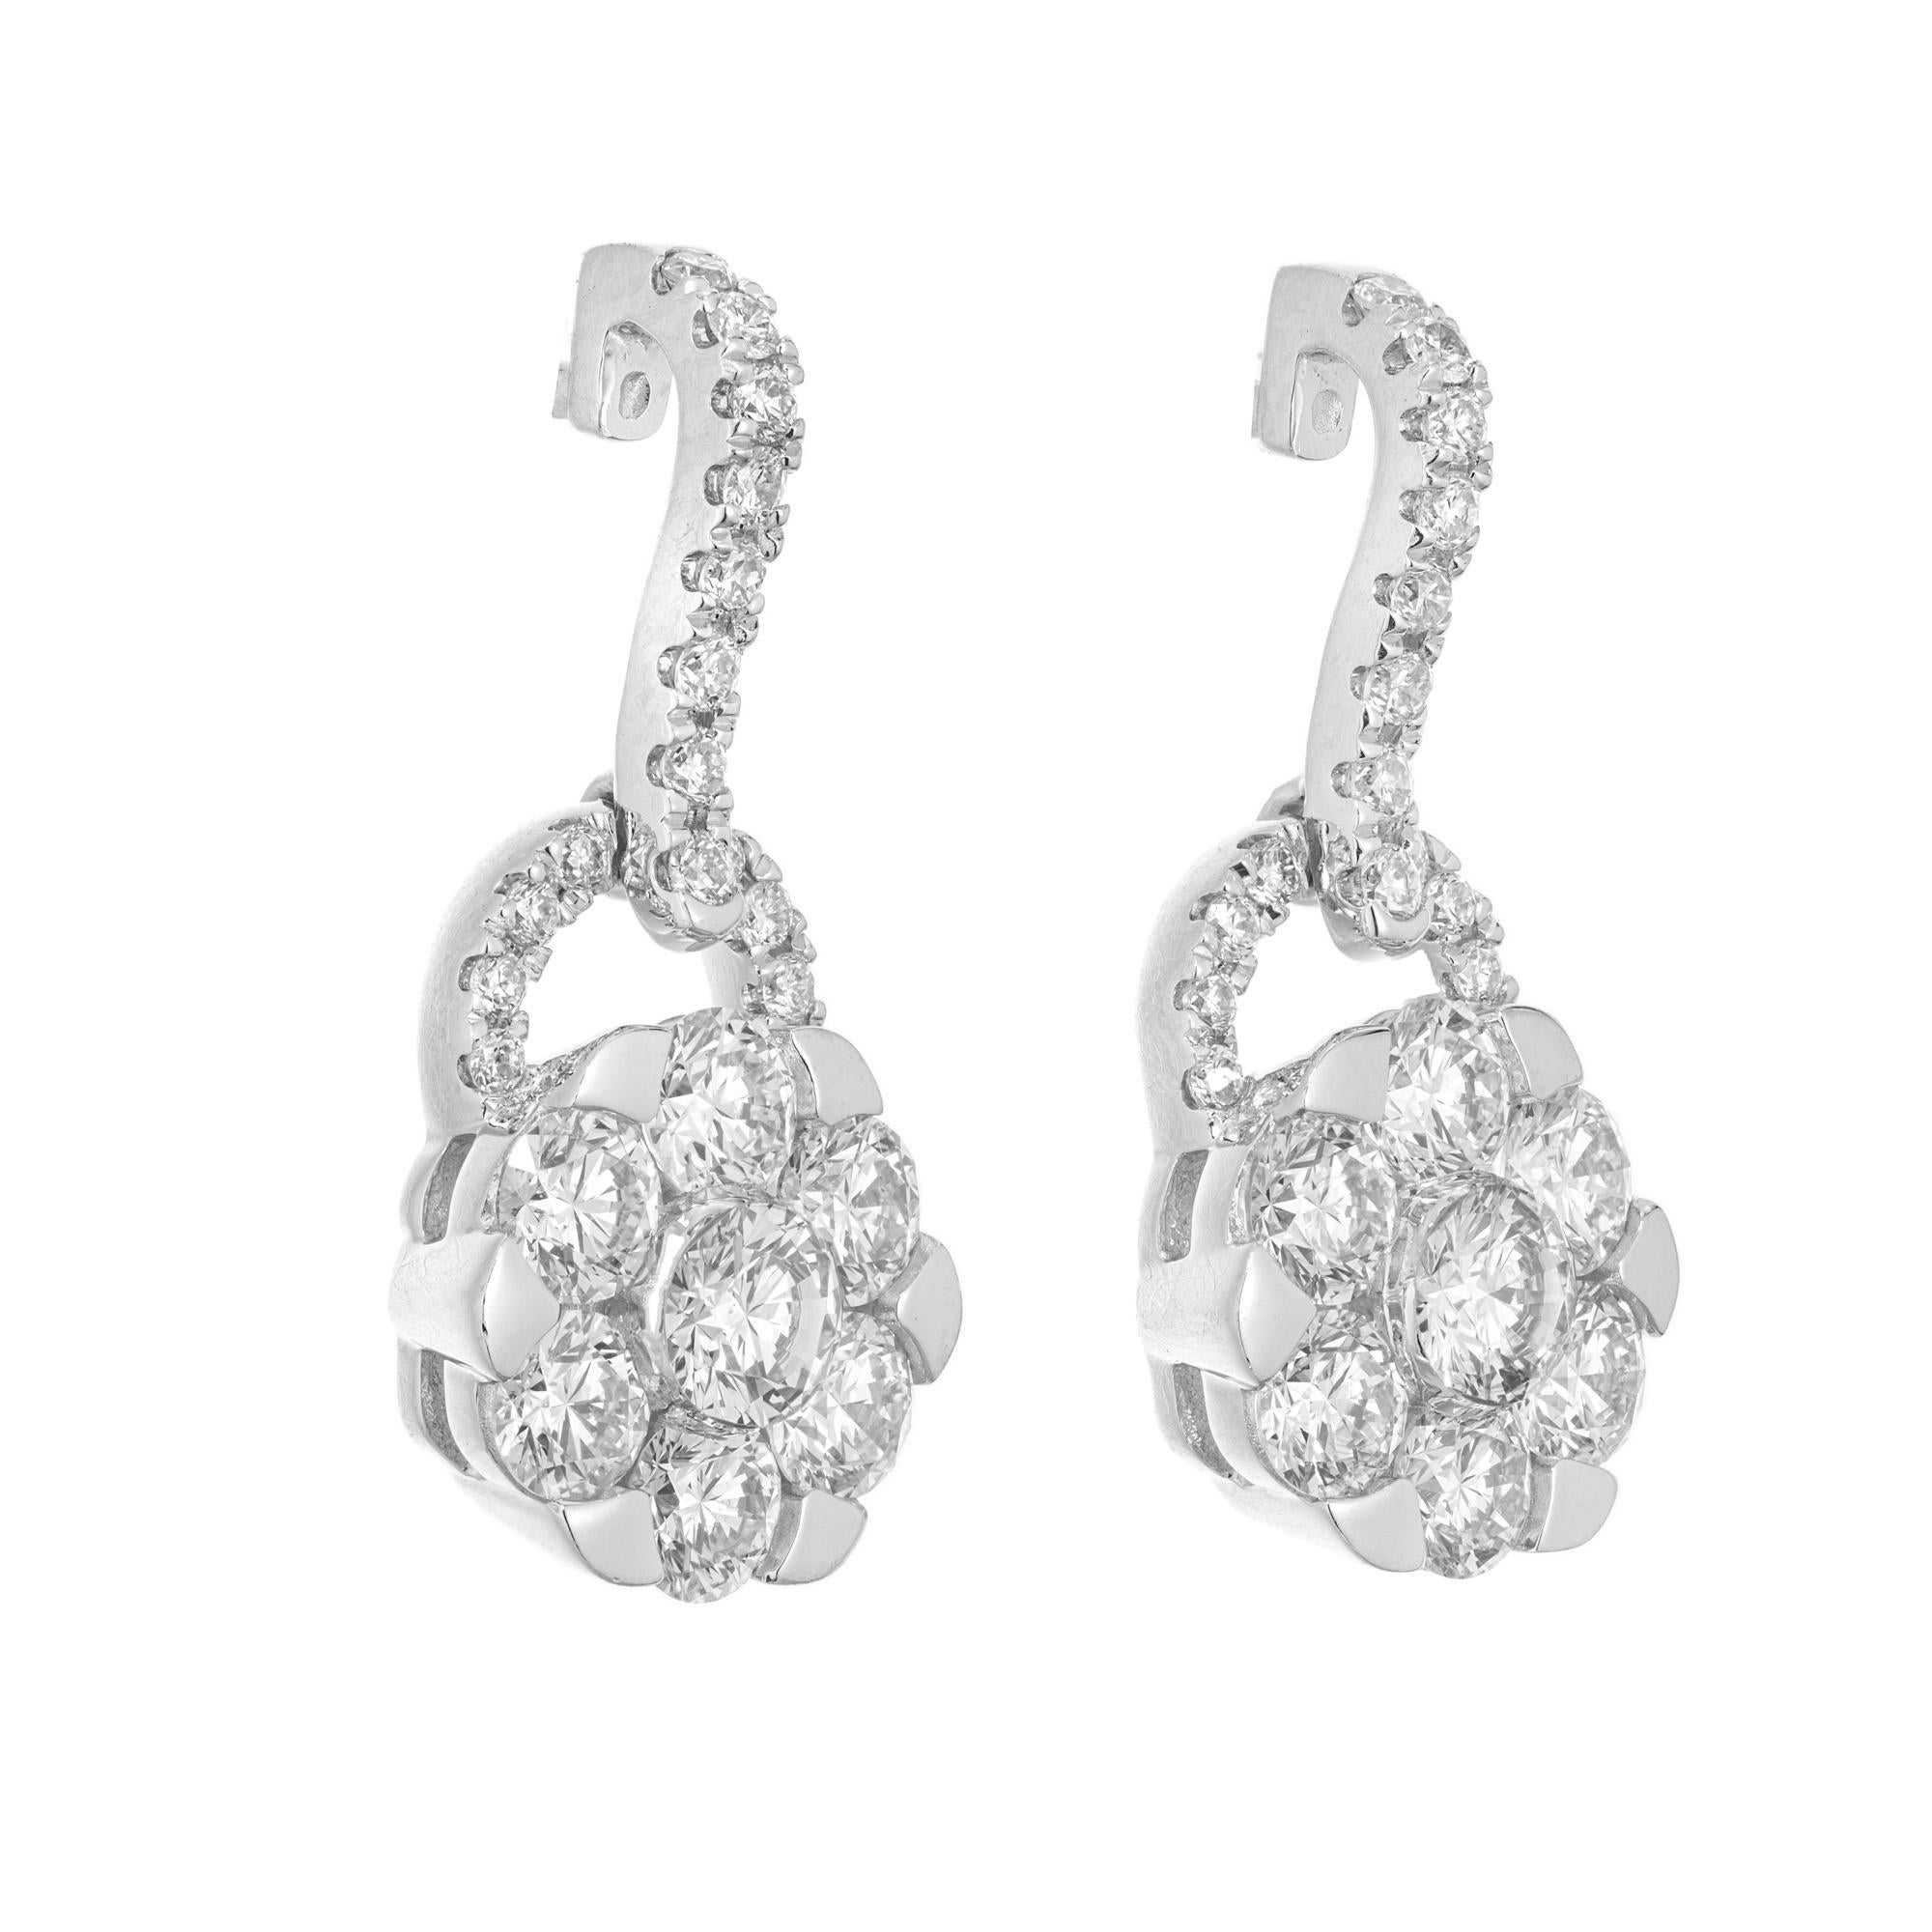 Boucles d'oreilles pendantes en diamant. 46 diamants ronds de taille brillant totalisant 1,00cts, sertis dans des montures en or blanc 14k. Deux pendentifs en forme de fleur, chacun orné de sept diamants ronds, avec un demi-cercle en diamant relié à